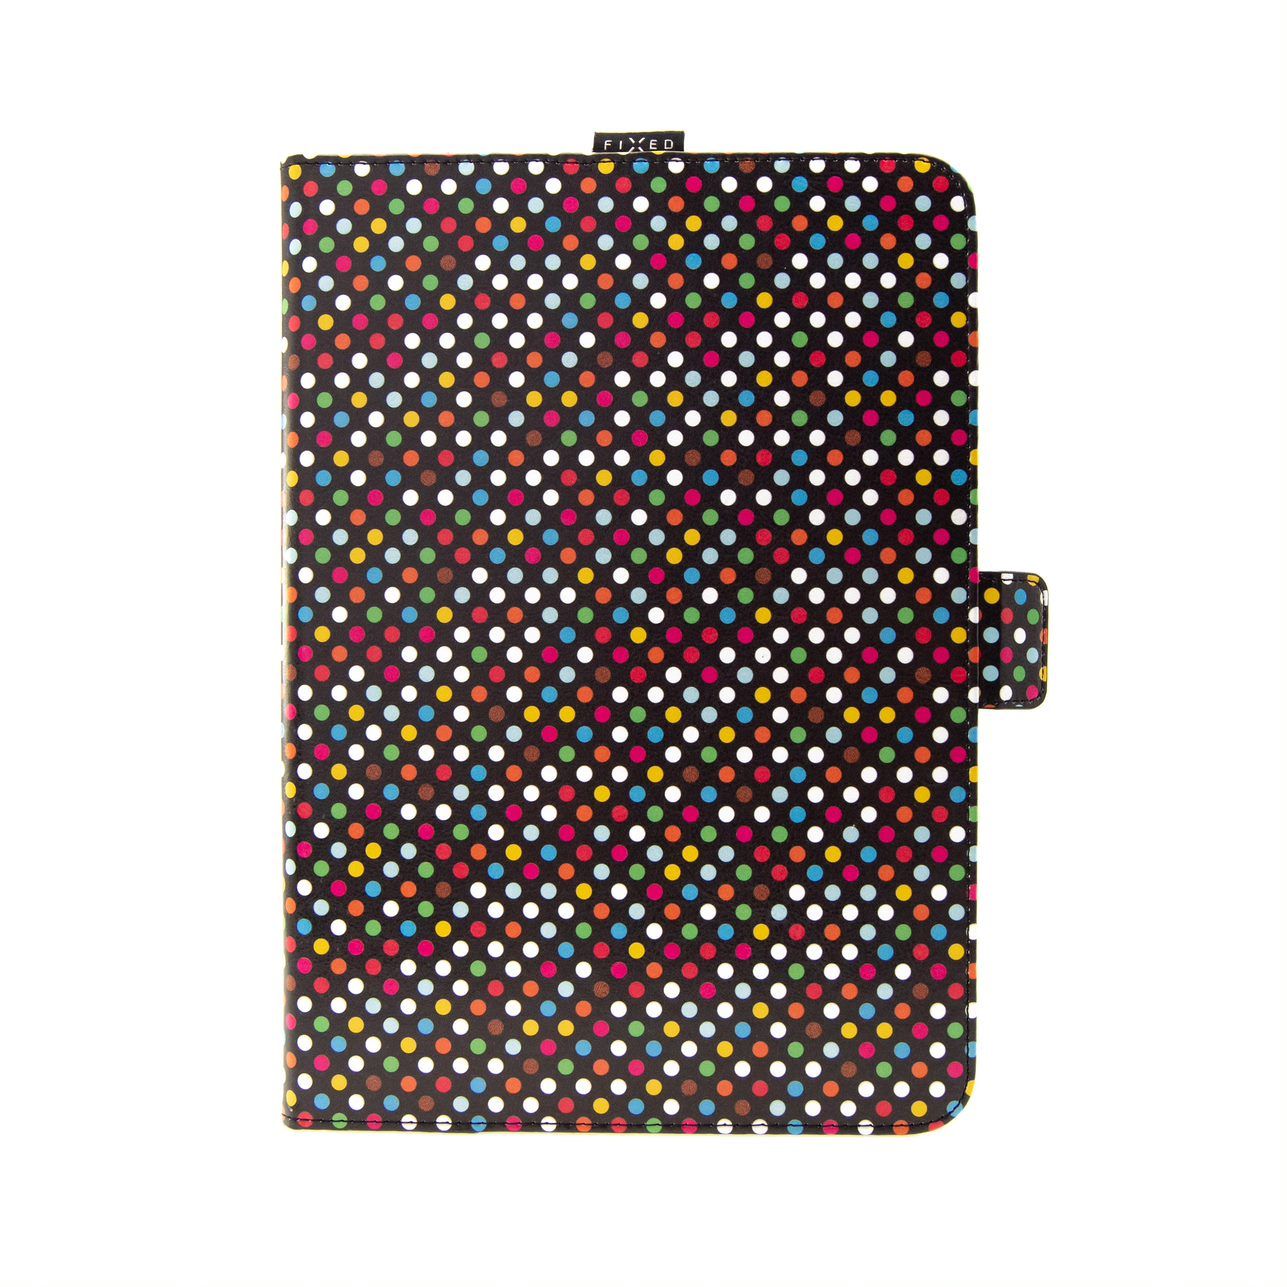 Pouzdro pro 10,1" tablety FIXED Novel se stojánkem a kapsou pro stylus, PU kůže, motiv Rainbow Dots